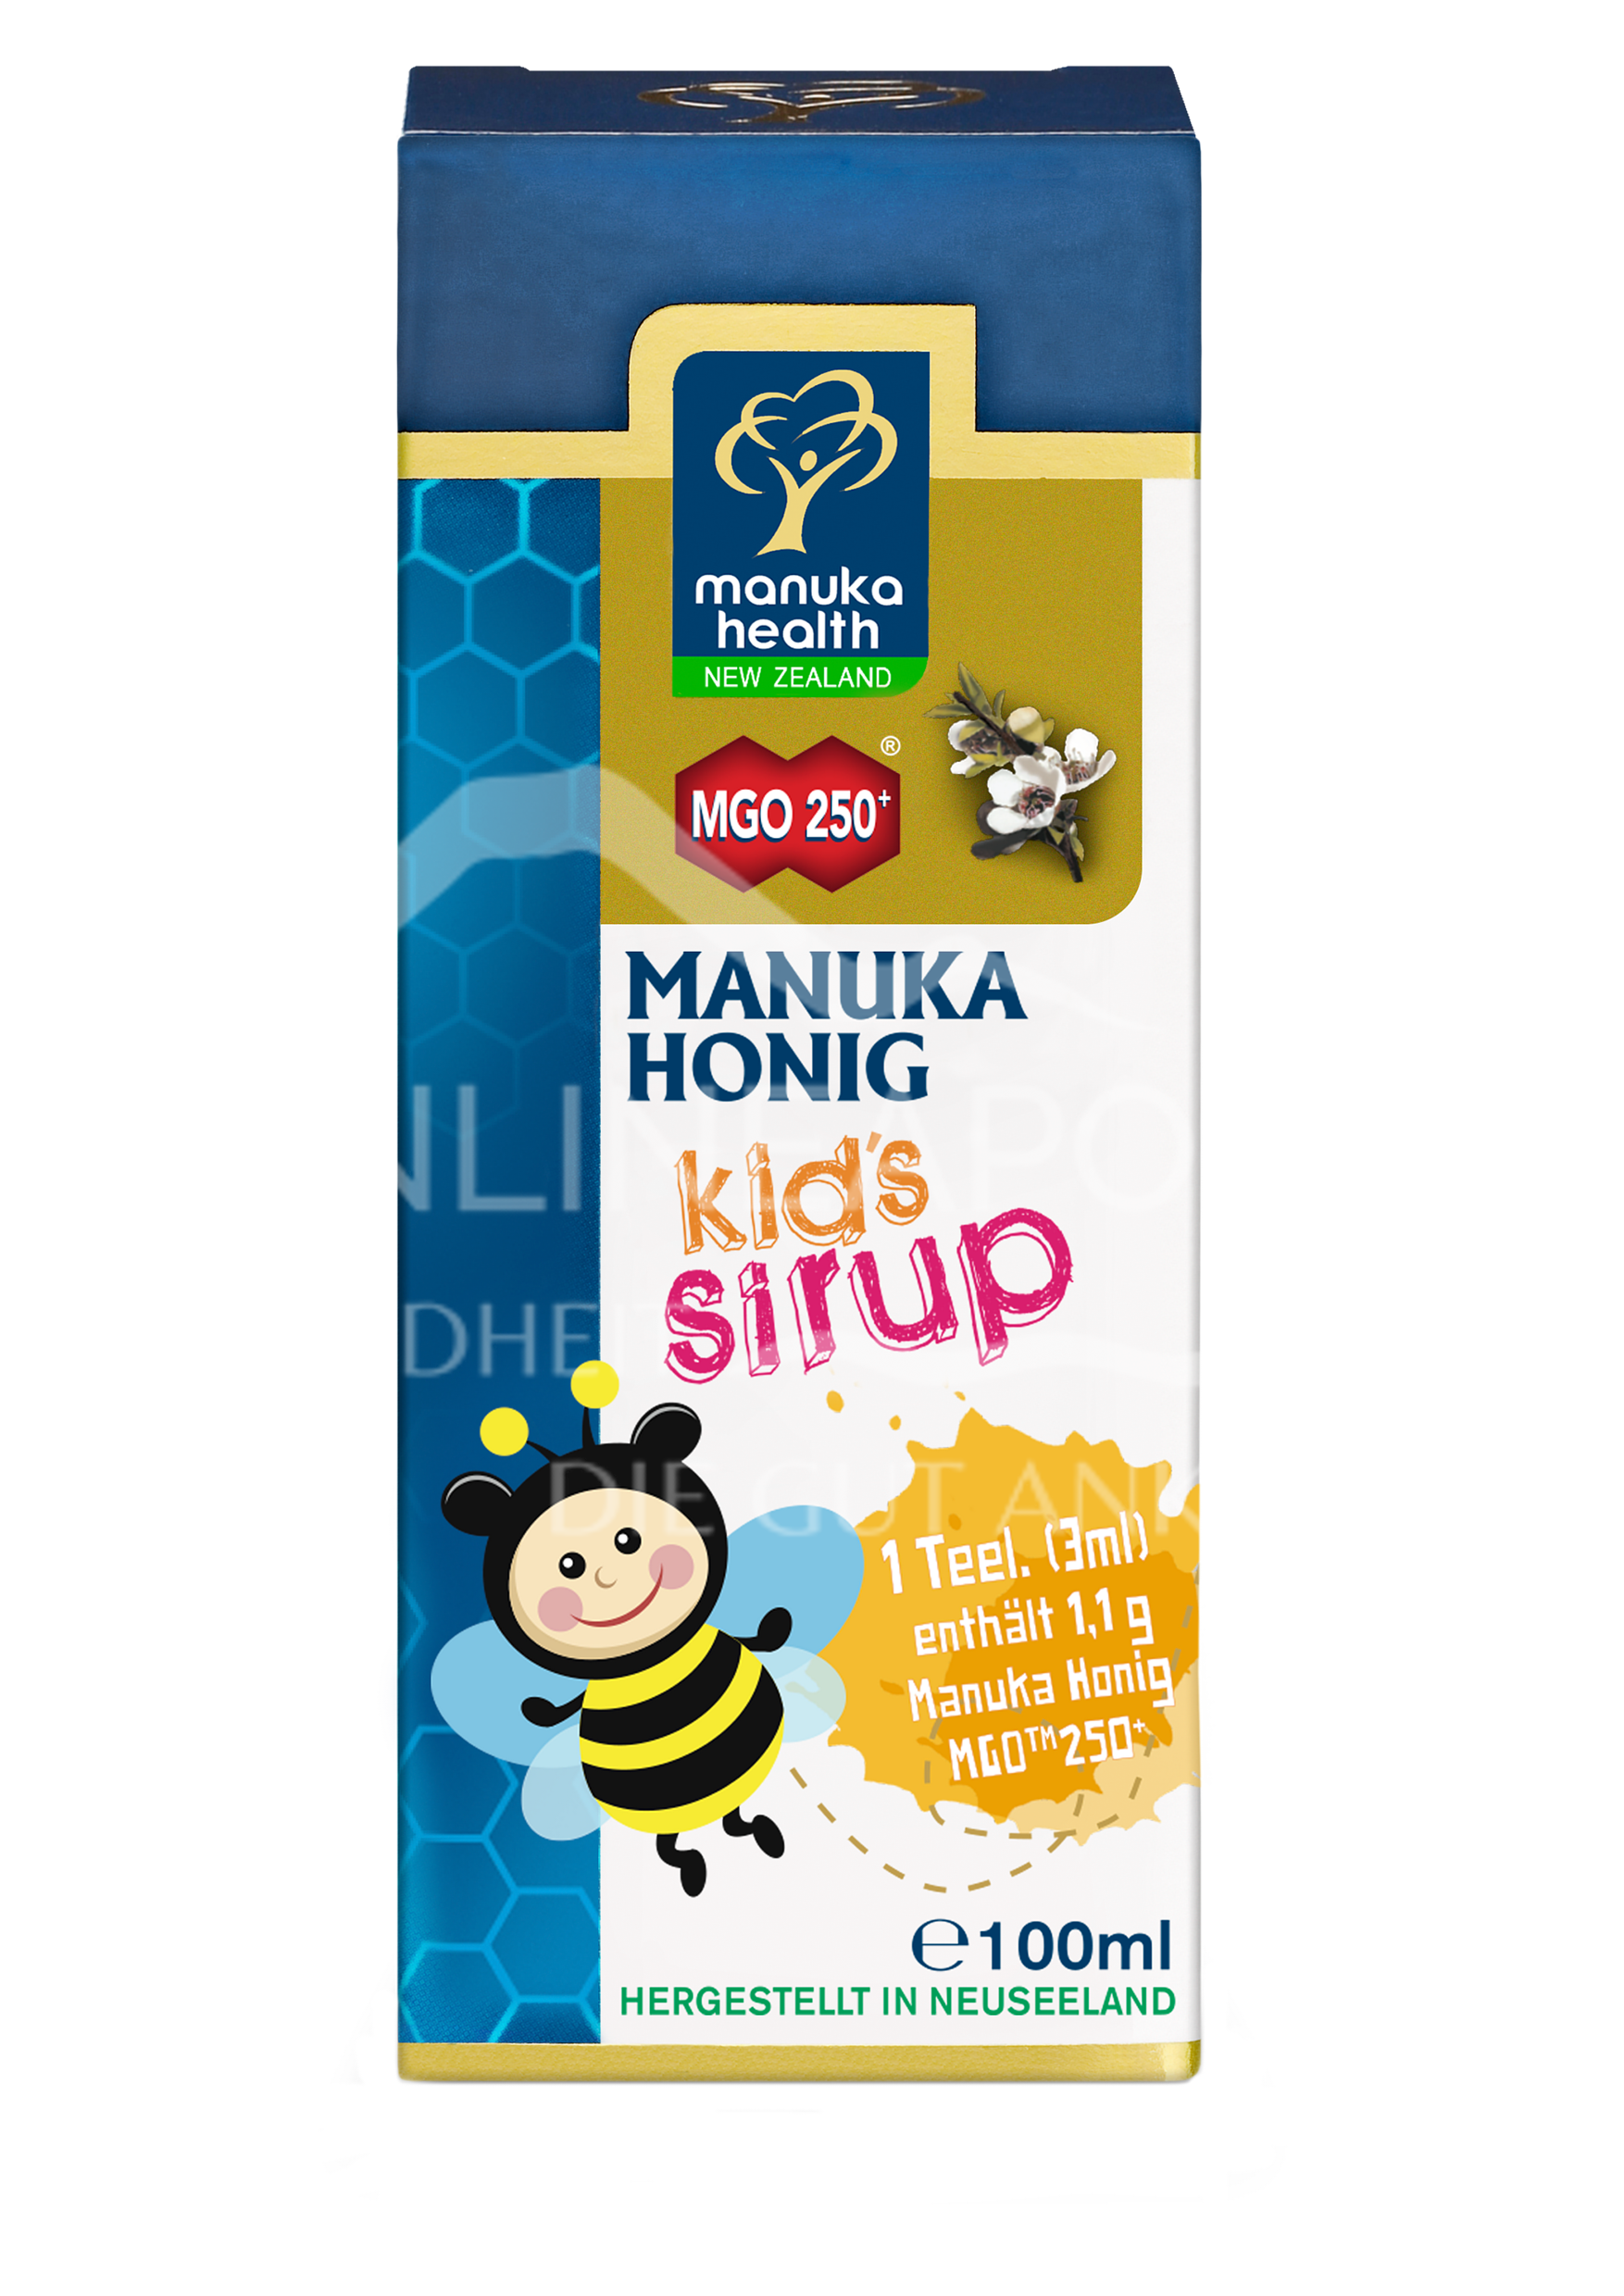 Manuka-Honig Sirup für Kinder MGO 250+